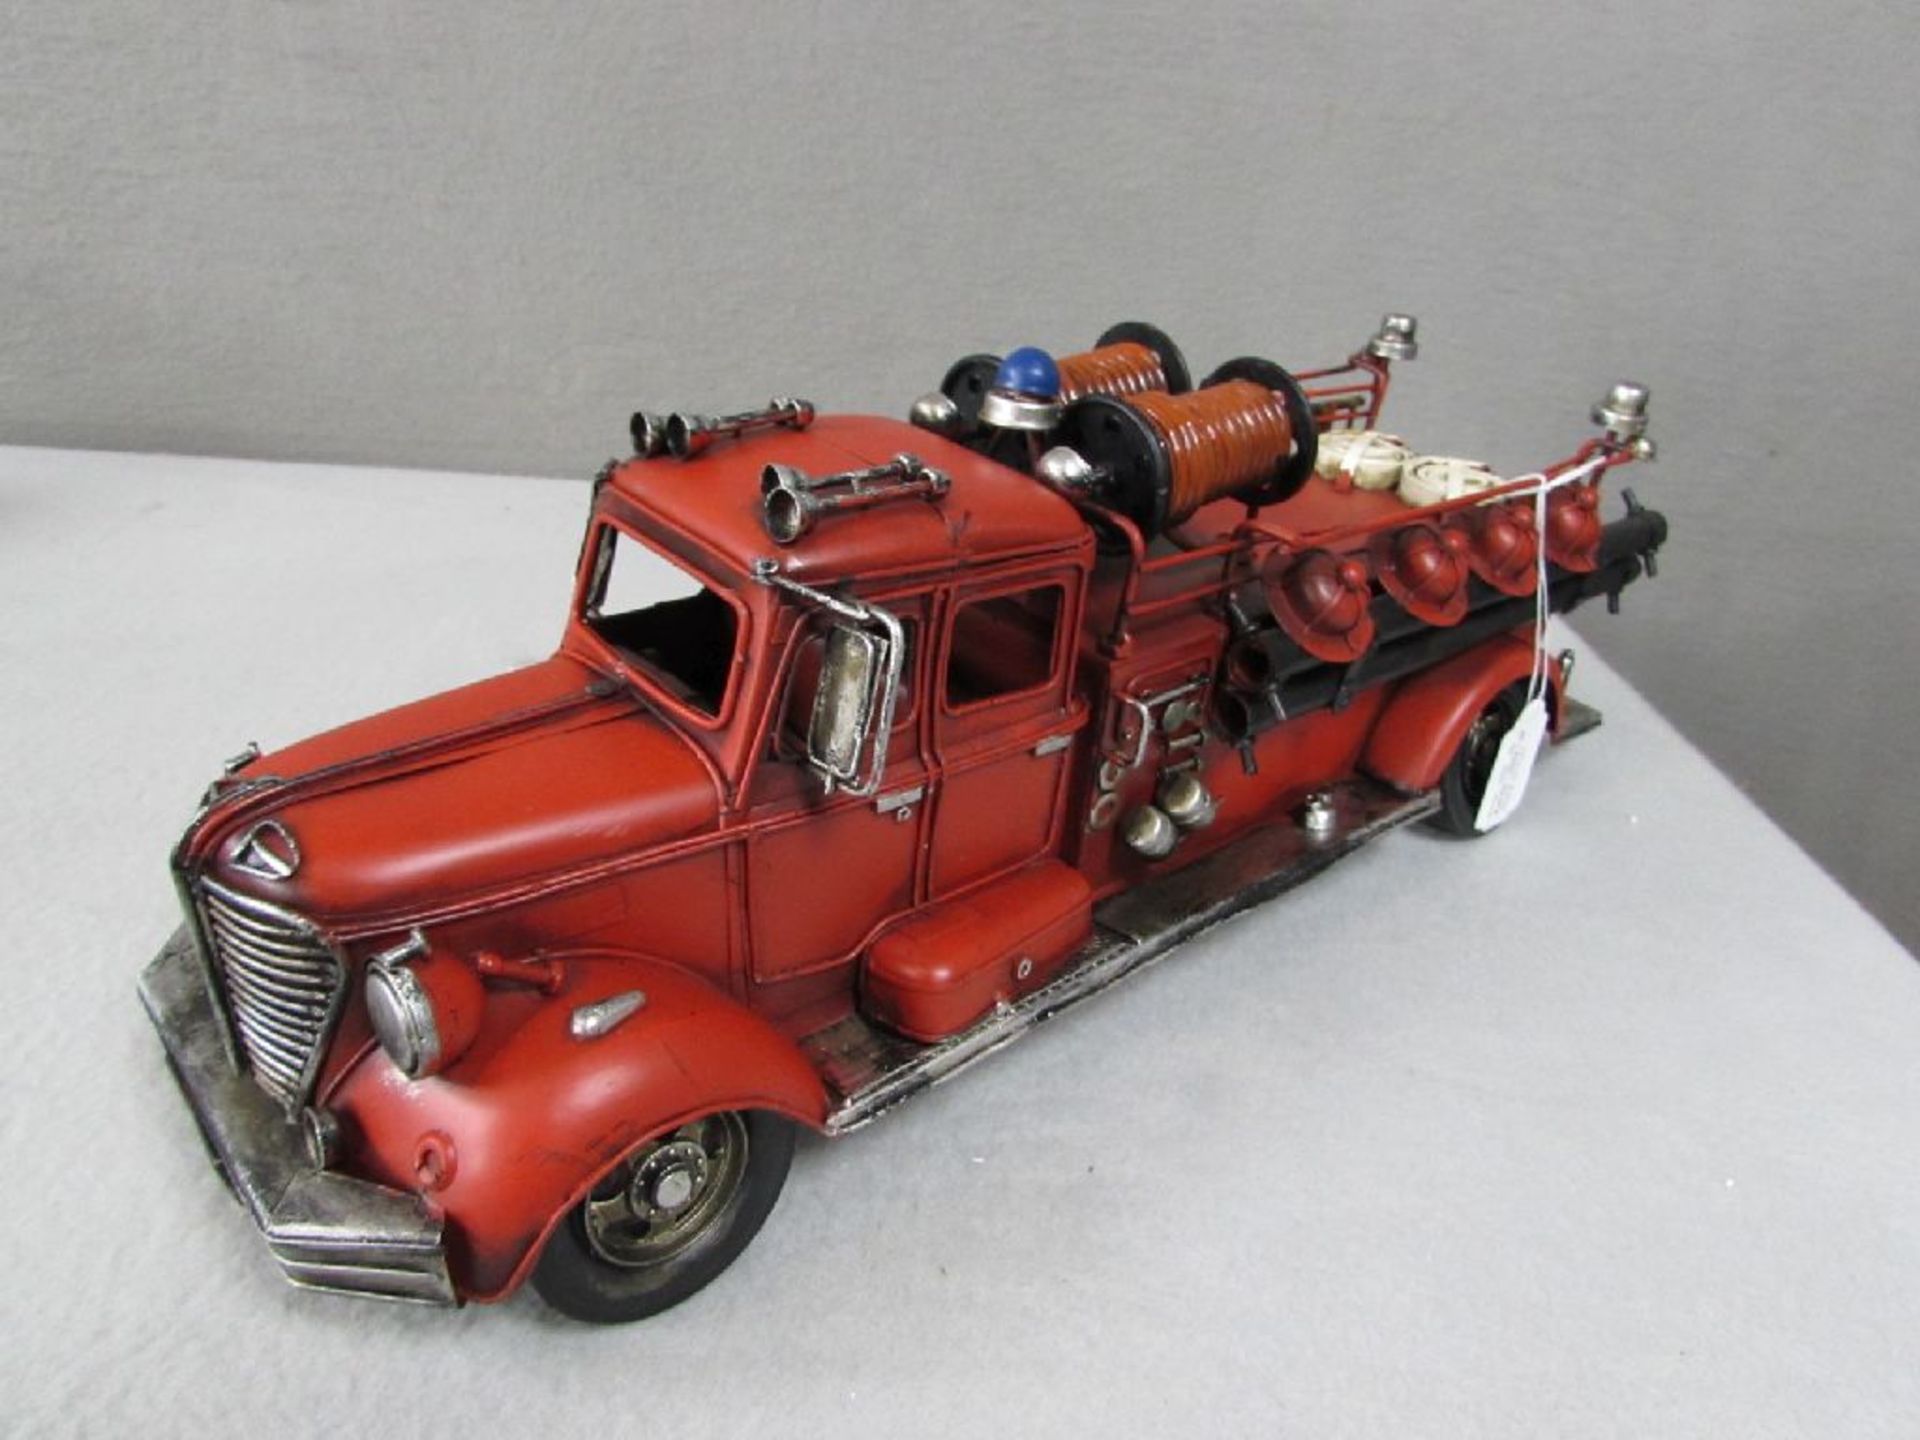 Feuerwehrmodell Blech U.S.A 51 cm länge